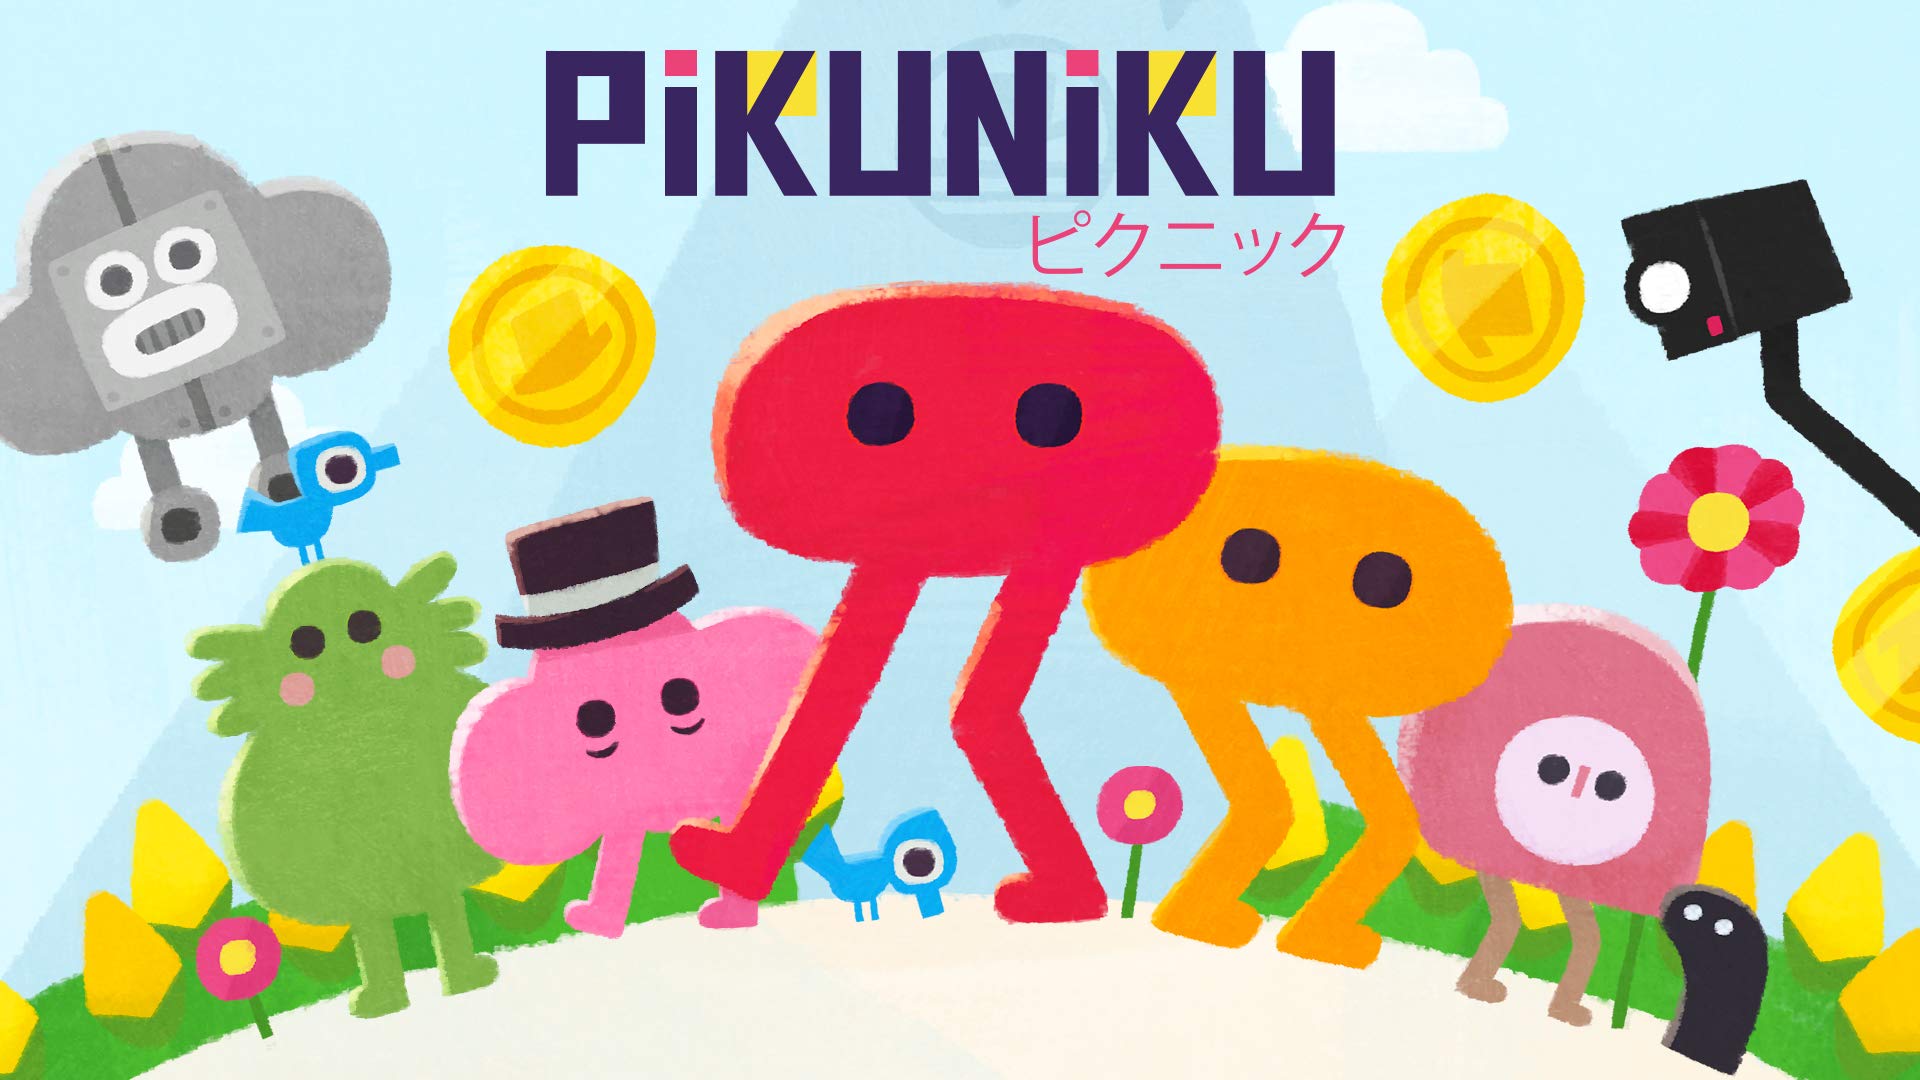 pikuniku free download full